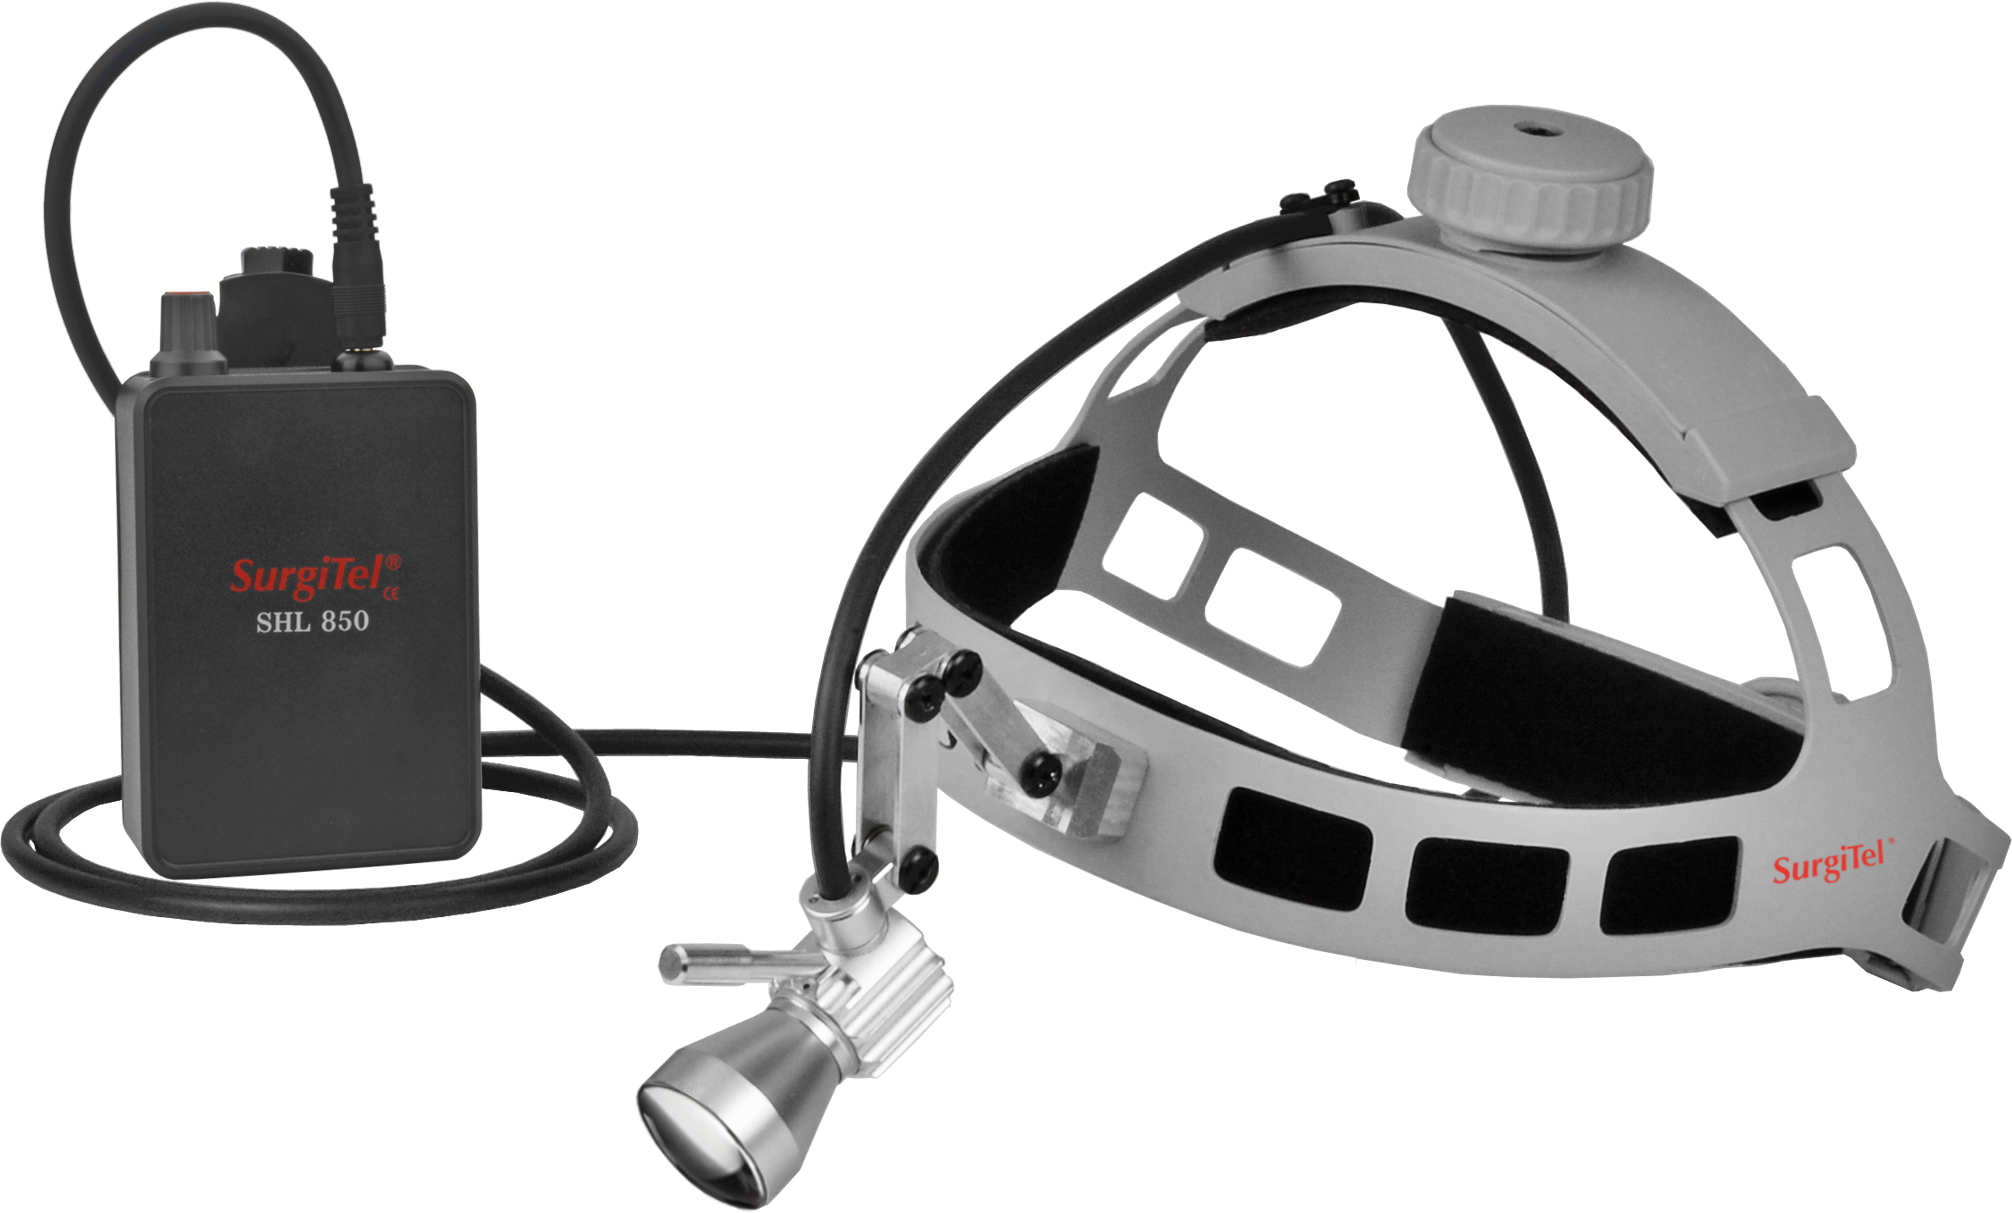 Surgical Headband LED 2.0 from SurgiTel